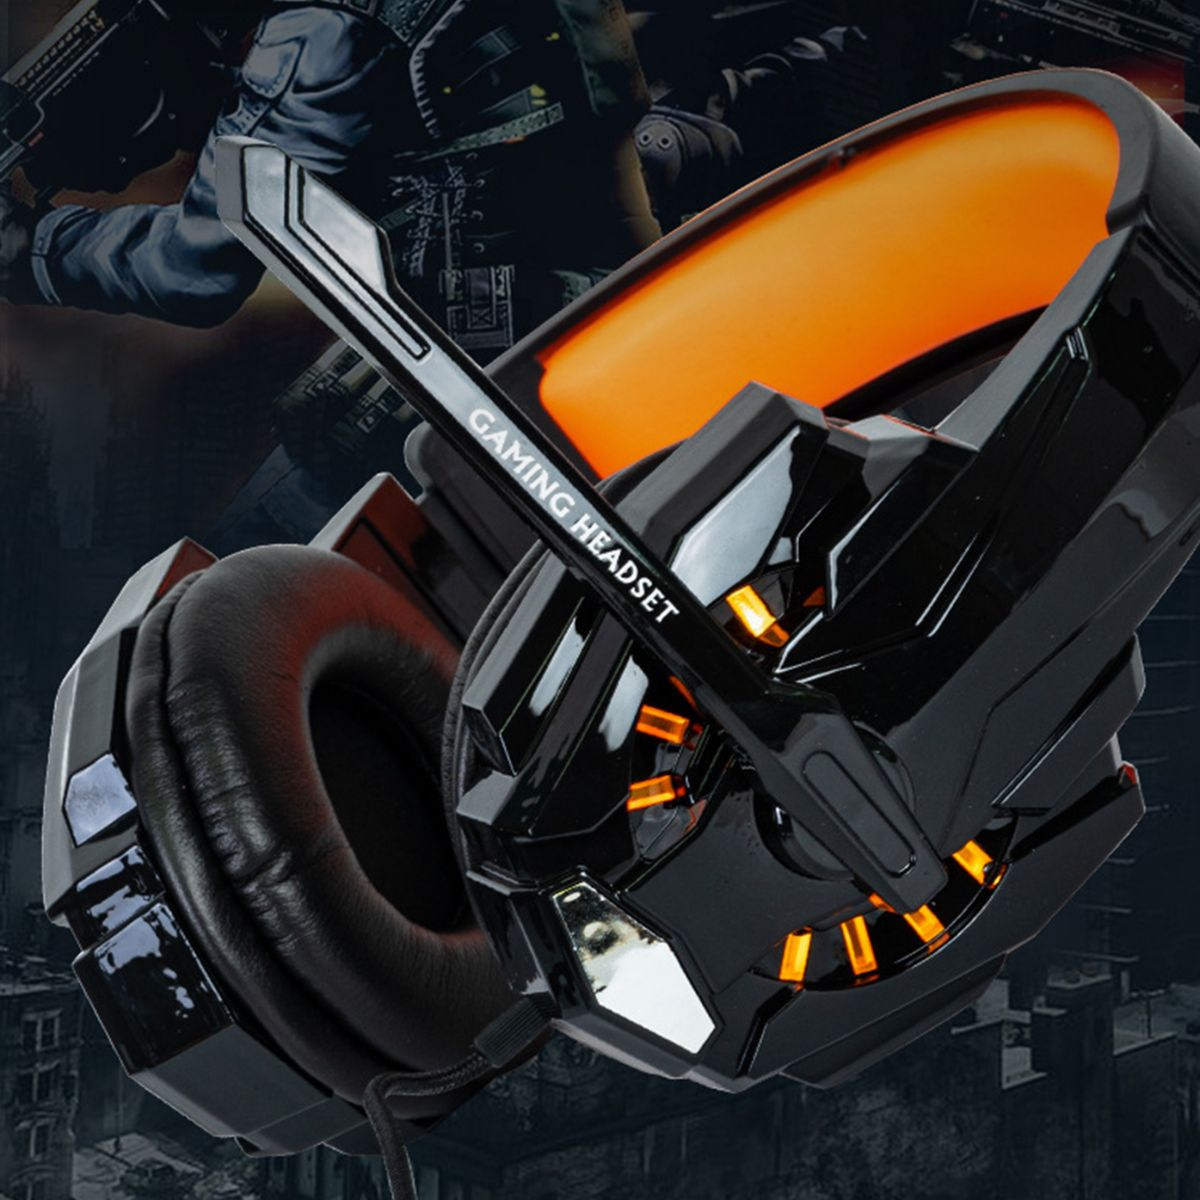 KINSI Kabelgebundene Kopfhörer,On-Ear-Kopfhörer,7.1 Toneffekte Gaming-Headset, Over-ear Orange Leuchtendes Kopfhörer